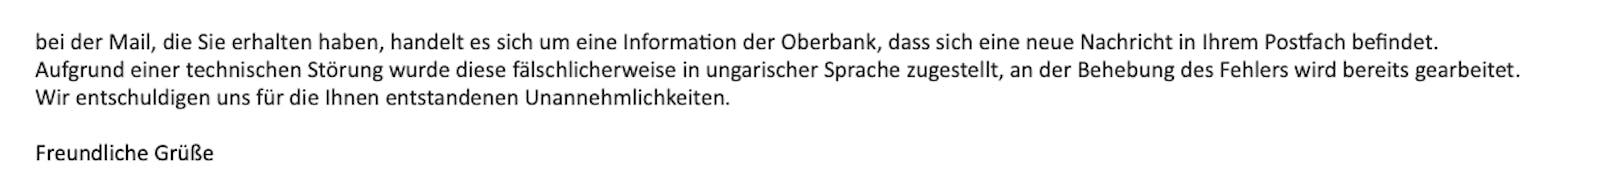 Die Erklärung der Oberbank.